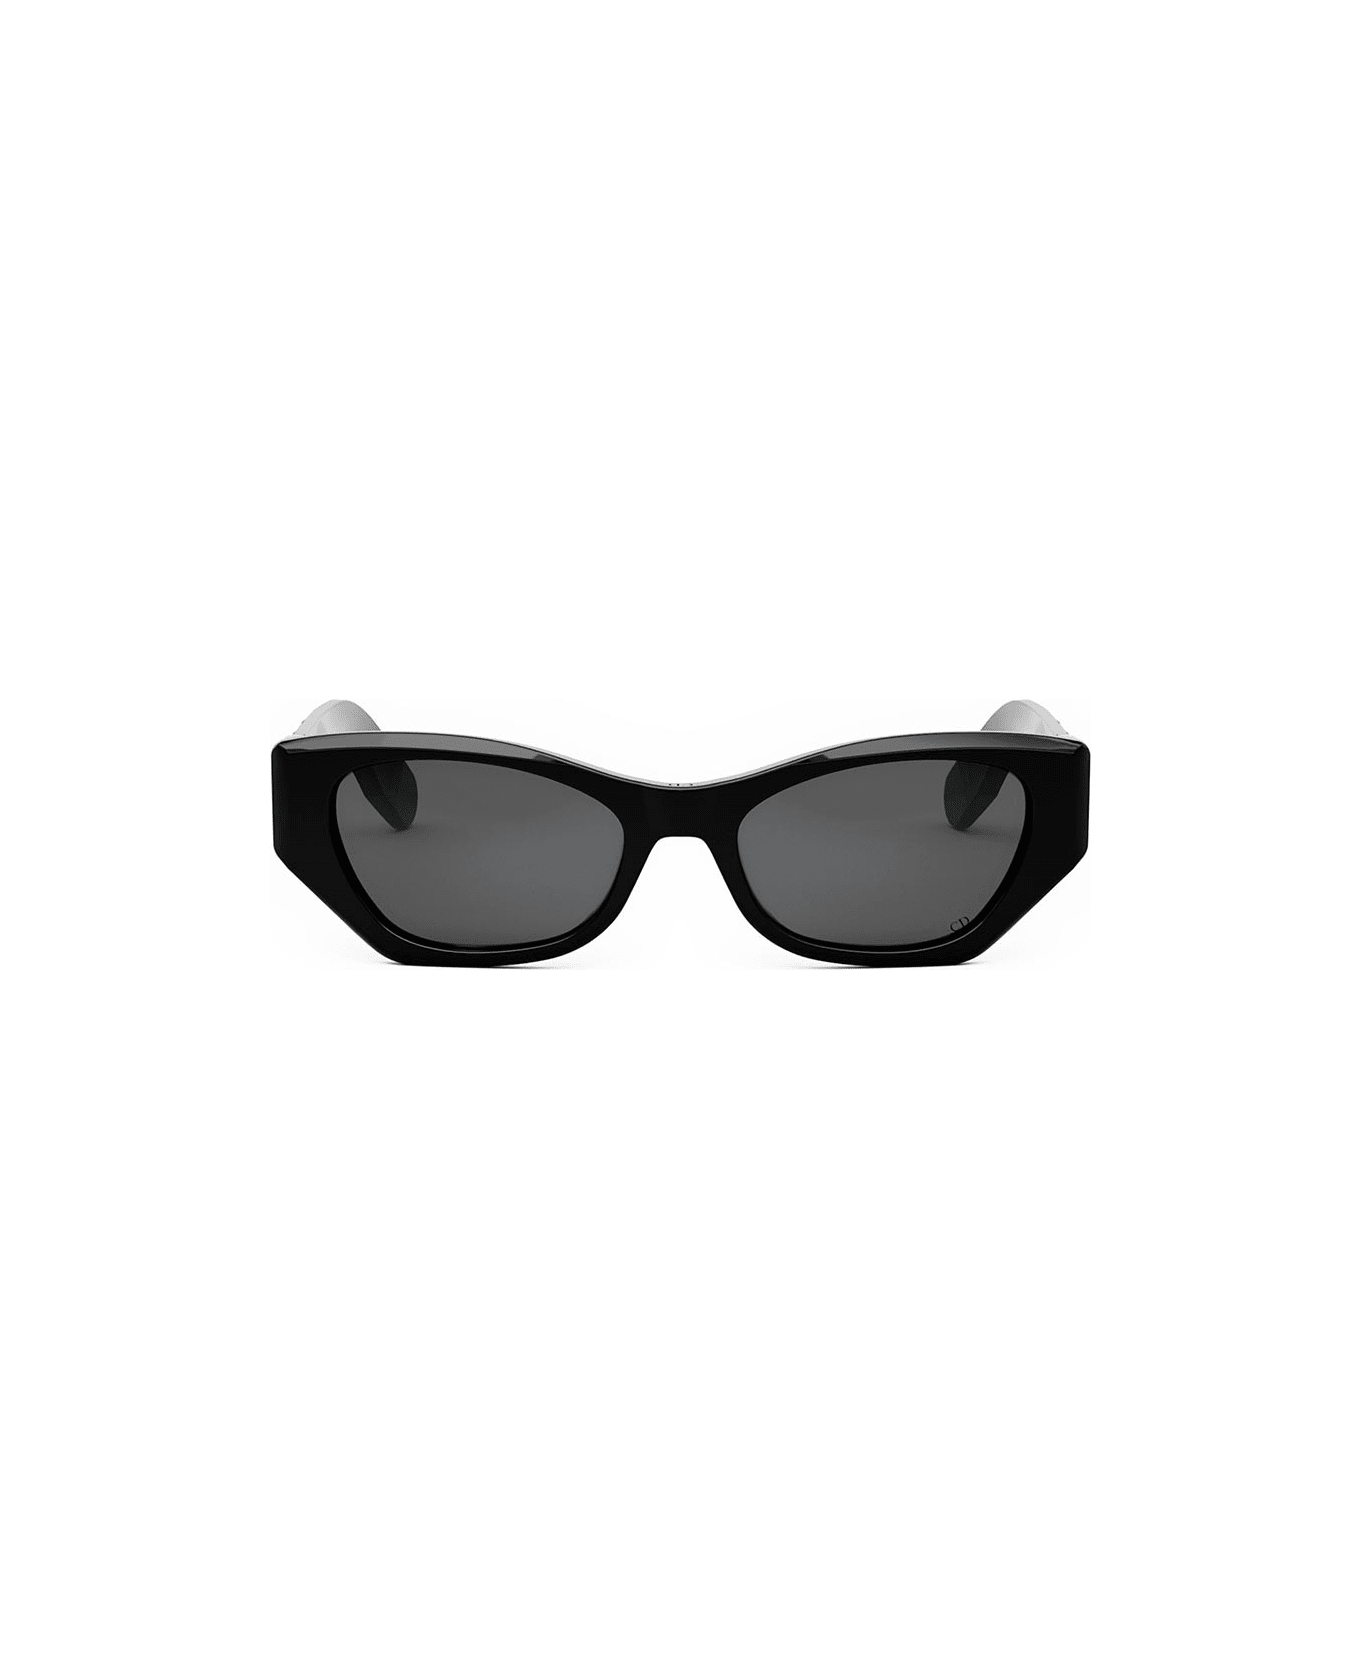 Dior Eyewear Sunglasses - Nero/Grigio サングラス